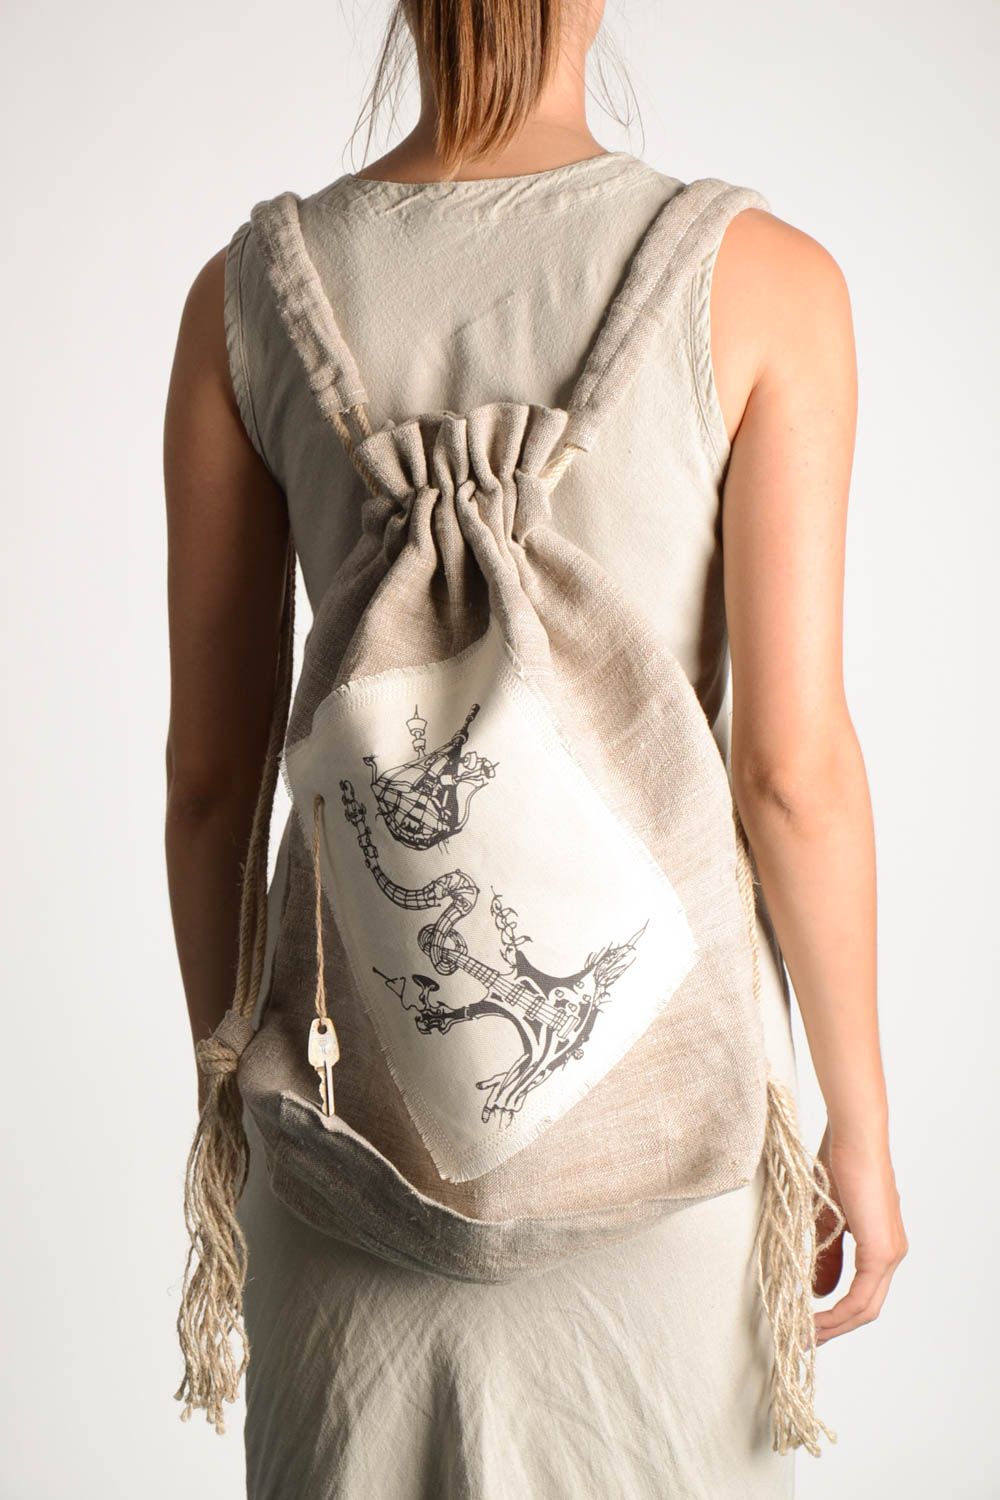 Сумка ручной работы текстильный рюкзак с принтом большая сумка красивая фото 1